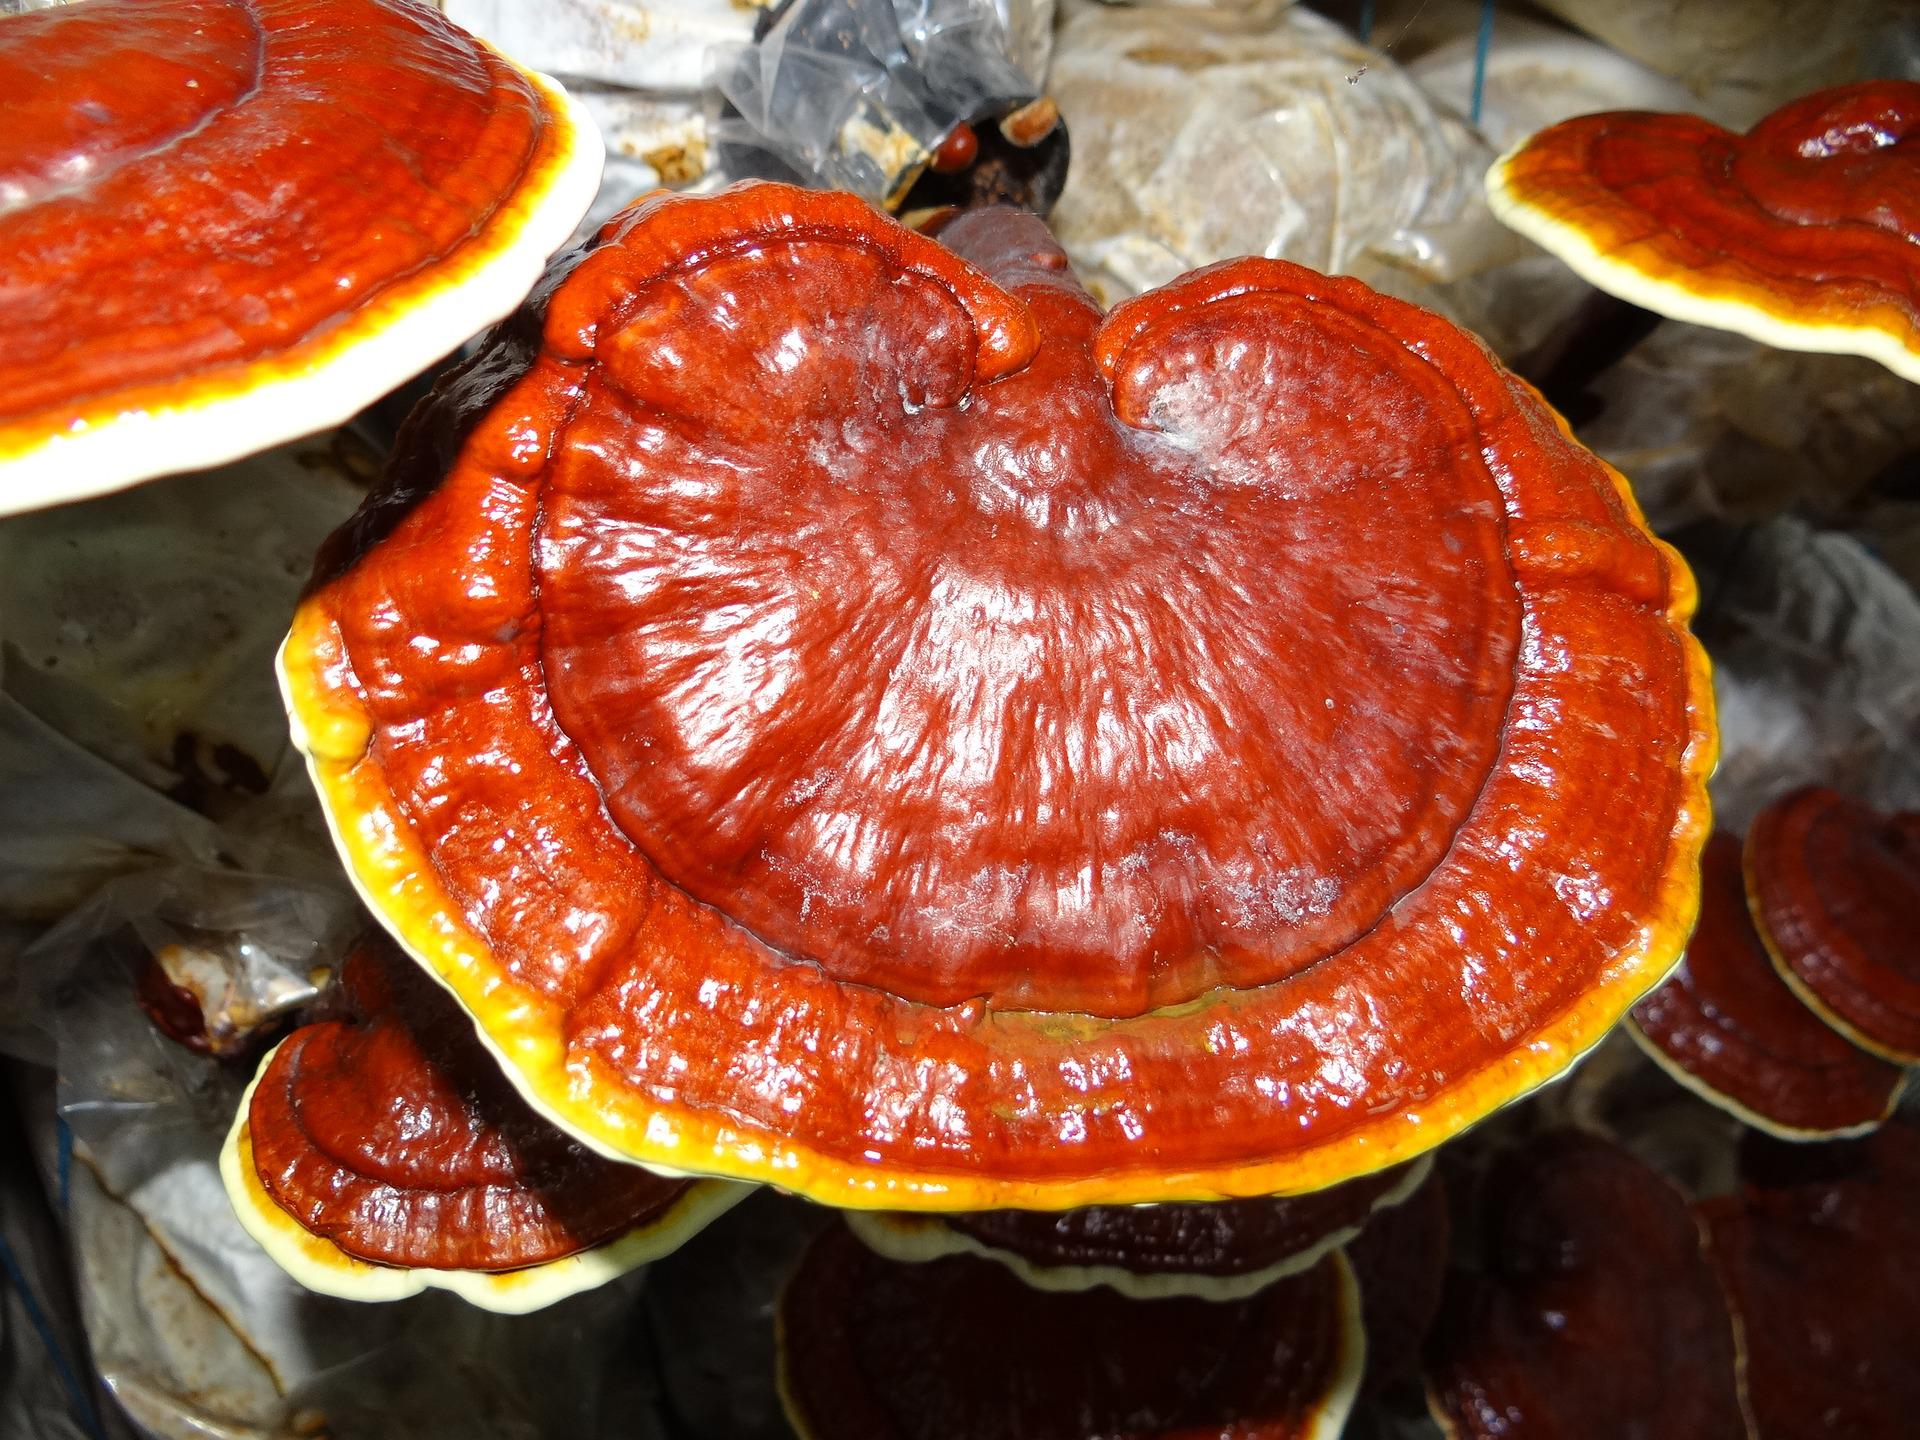 Pelajari tentang 10 Manfaat dan Bahaya Jamur Lingzhi [Ganoderma] Untuk Kesehatan